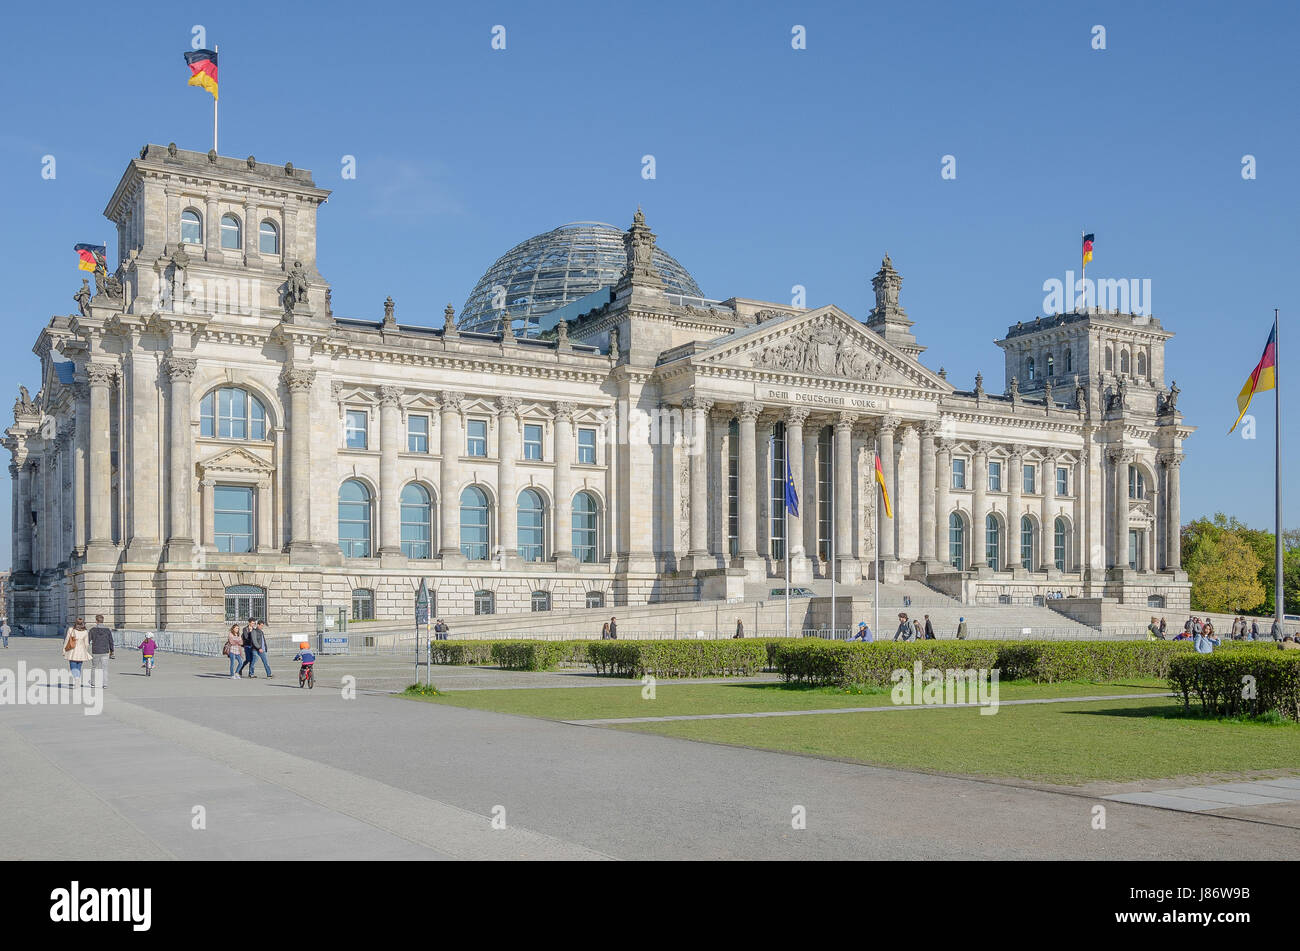 Das Reichstagsgebäude mit der berühmten Glaskuppel ist eines der meistbesuchten Sehenswürdigkeiten in Berlin. Es ist Sitz des Deutschen Bundestages. Stockfoto